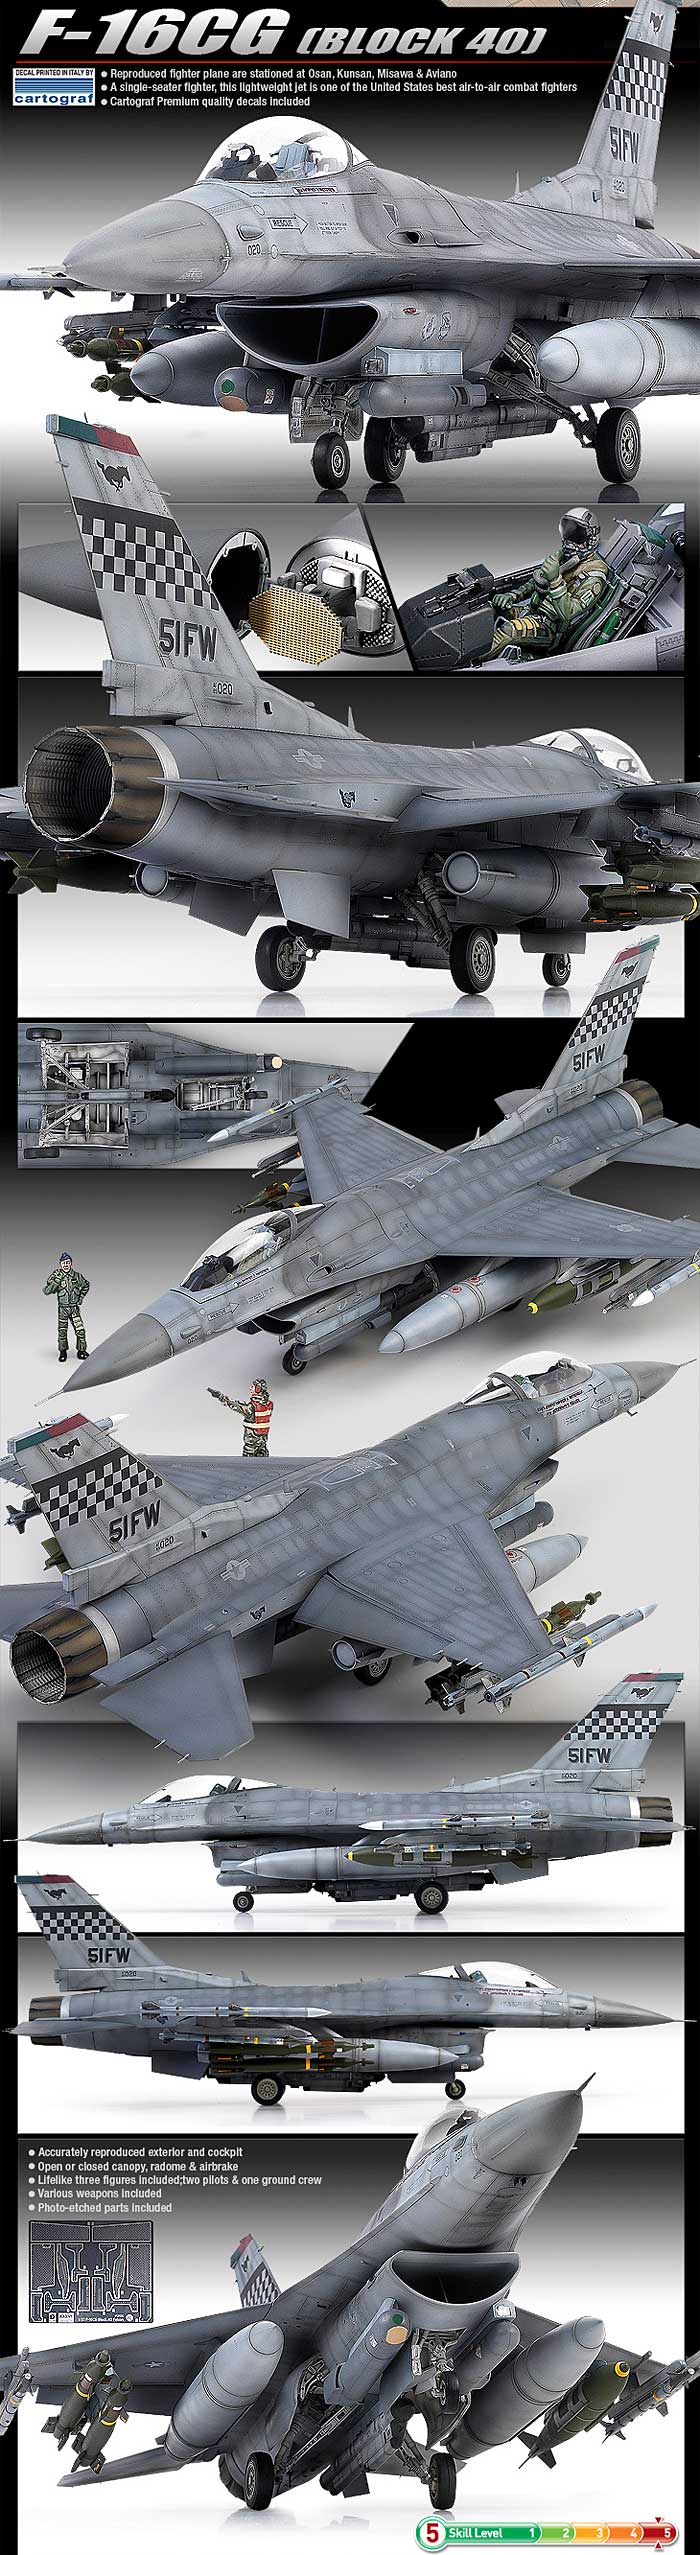 F-16CG ファイティングファルコン ブロック40 プラモデル (アカデミー 1/32 Scale Aircraft No.12106) 商品画像_3